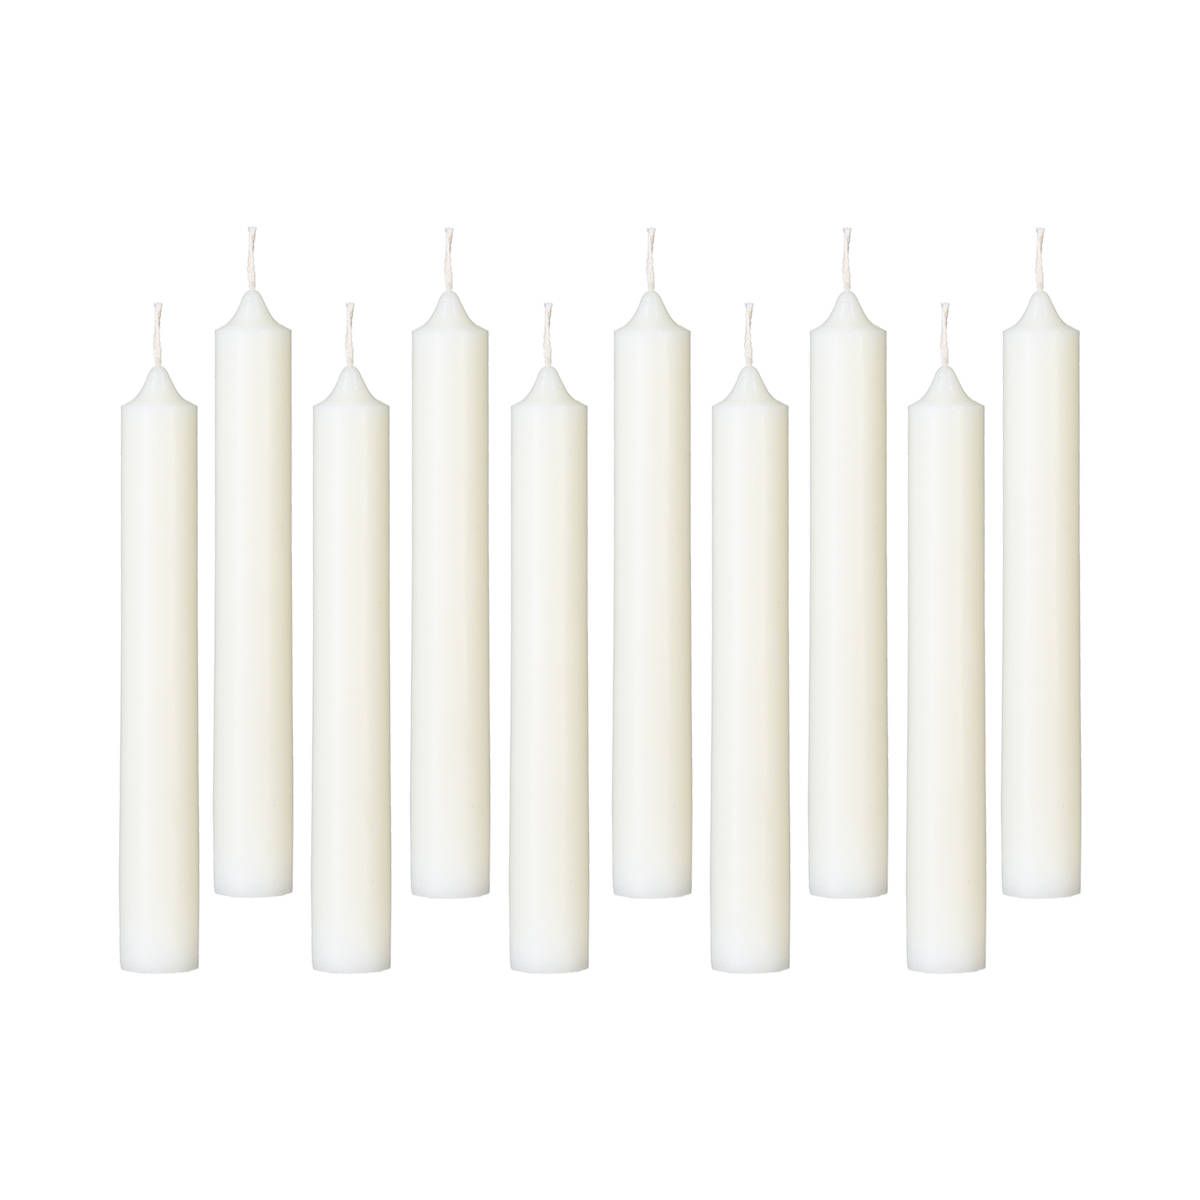 Atmosphera Úzké svíčky, bílé, sada 10 ks - EMAKO.CZ s.r.o.